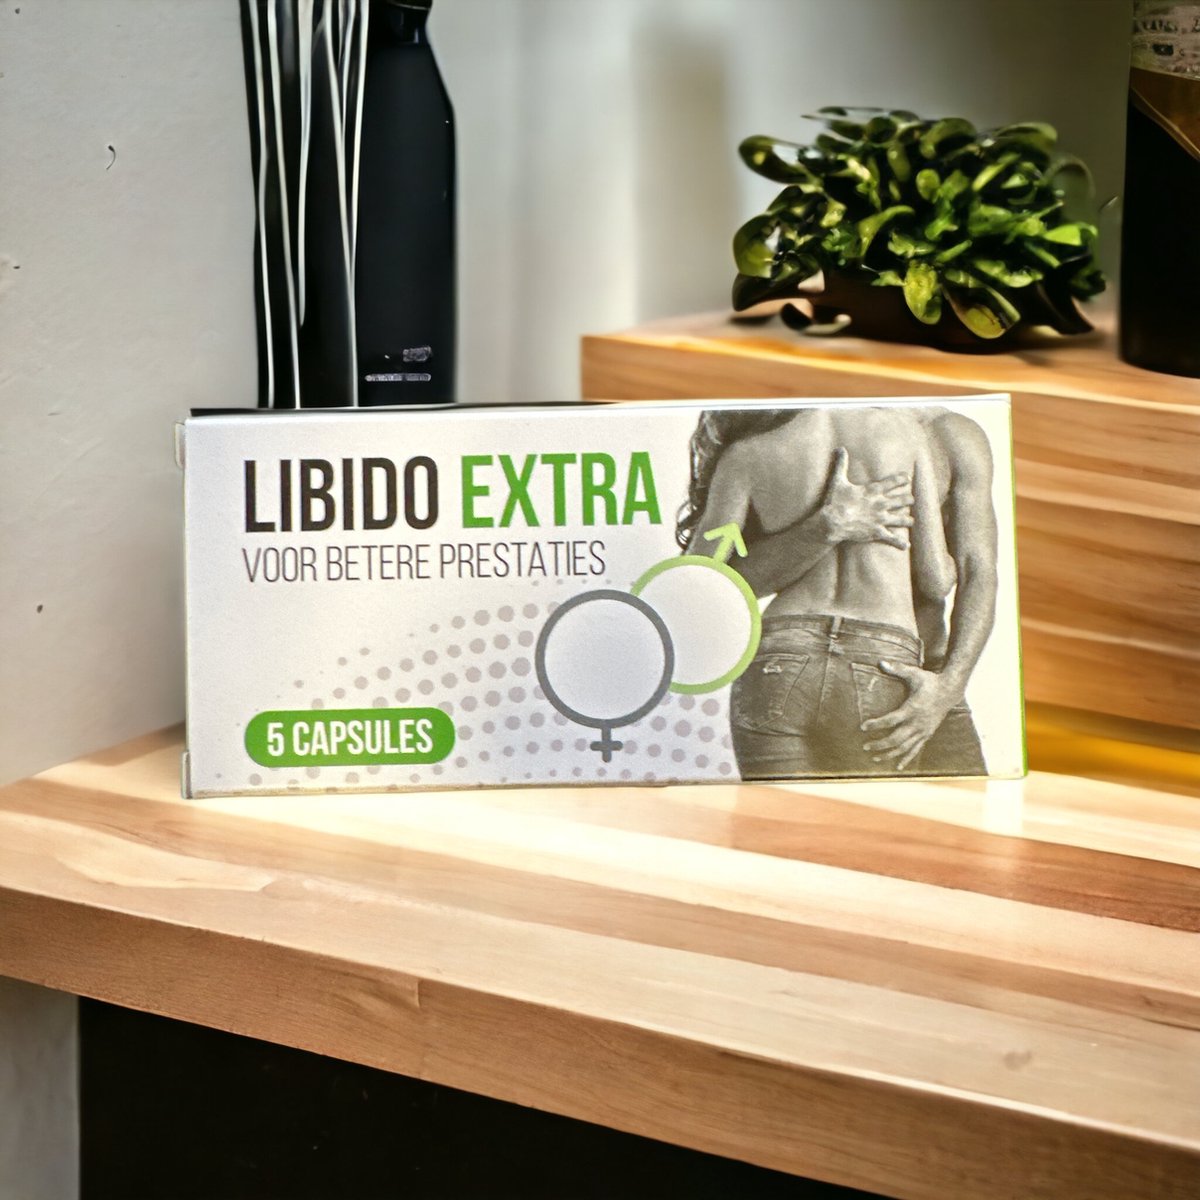 Libido Extra 5 Capsules - erectiepillen voor mannen - het 100% natuurlijke vervanger viagra & kamagra - forte erectiepillen